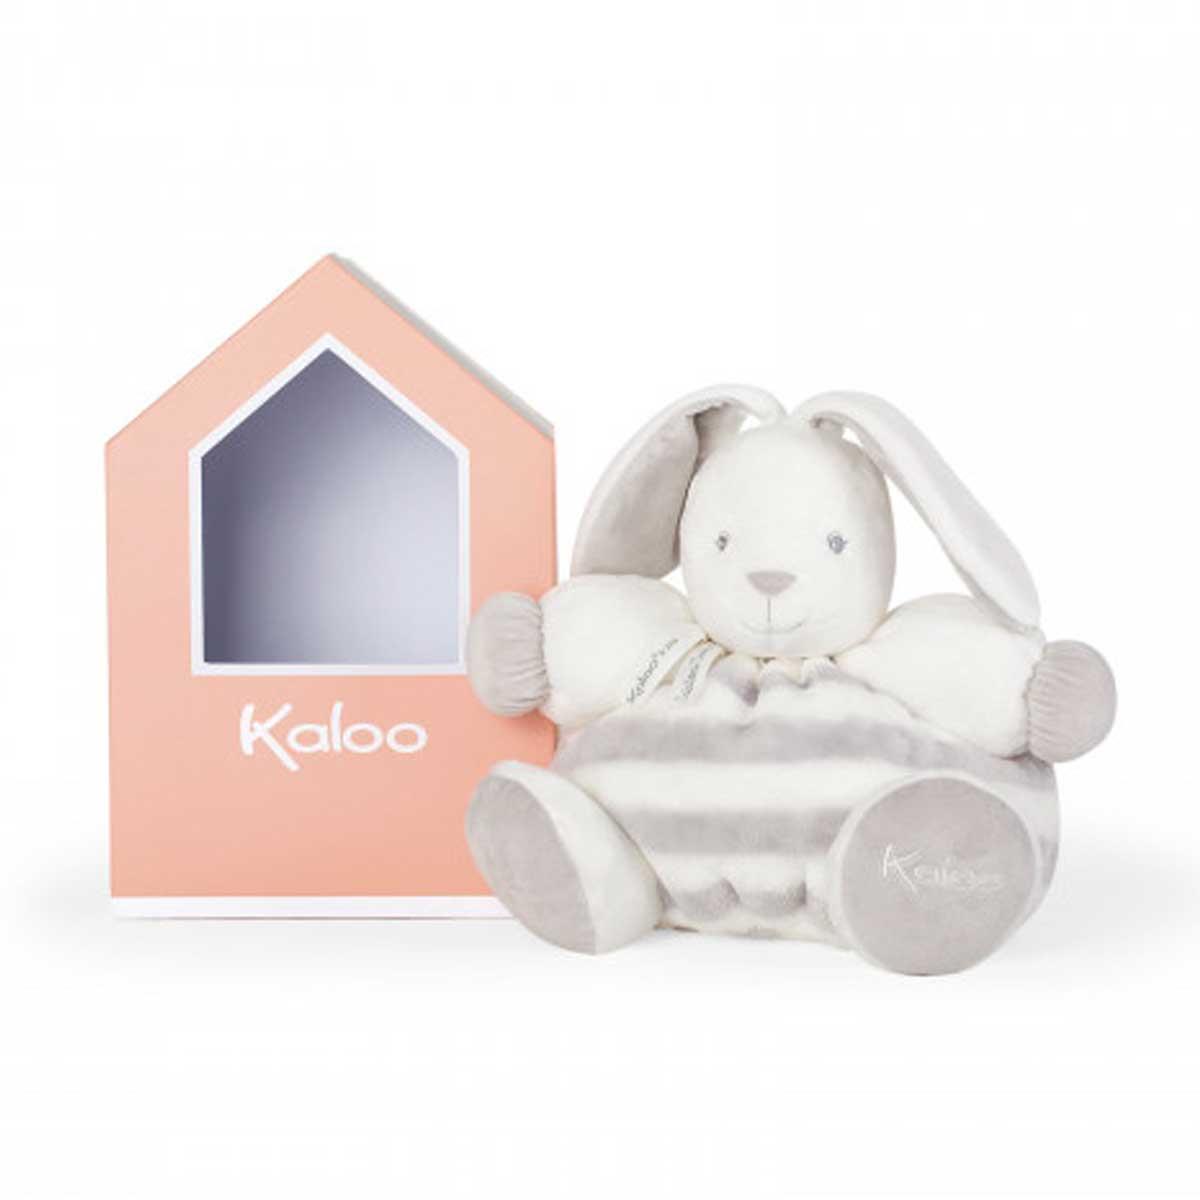 Kaloo Bebe Pastel Patapouf Rabbit Grey and Cream Large